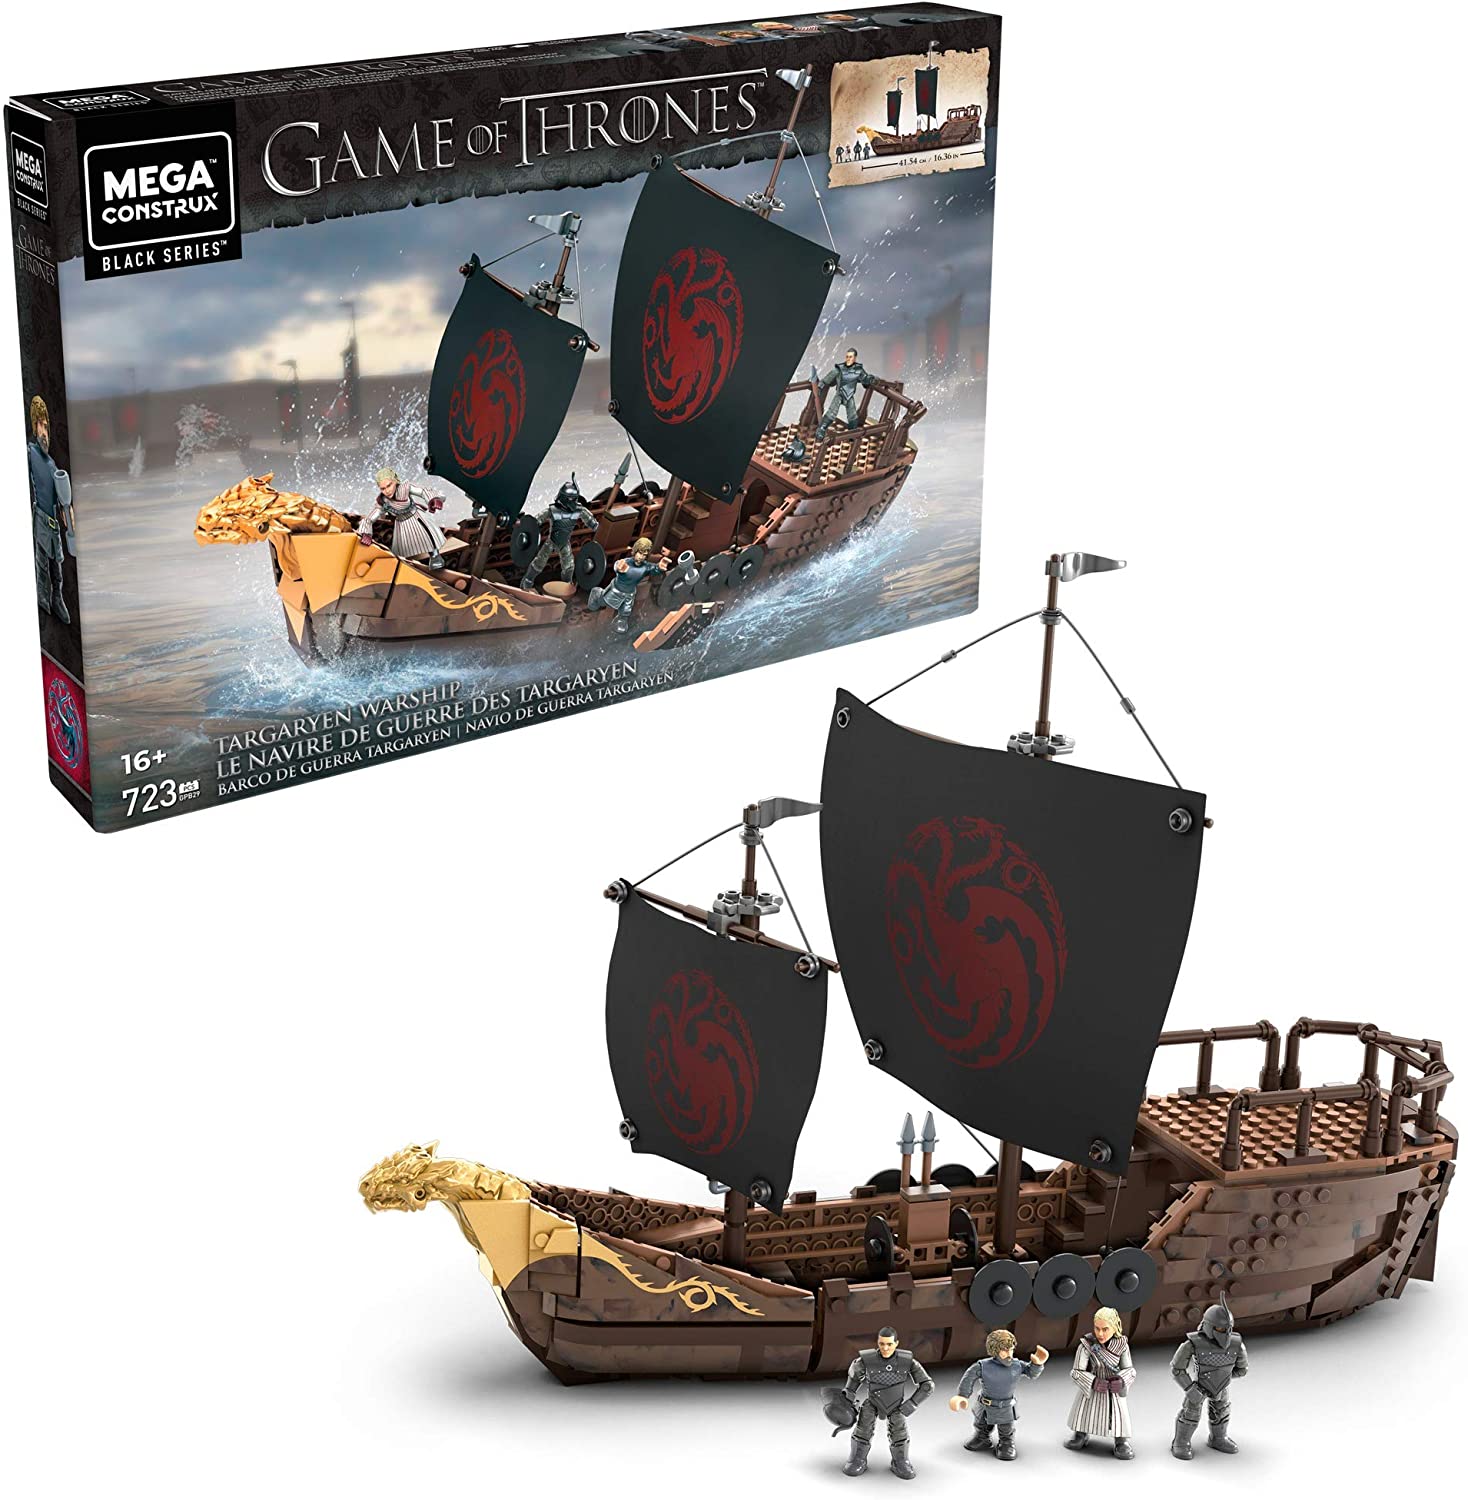 Mega Construx Game of Thrones Targaryen Warship en Amazon México